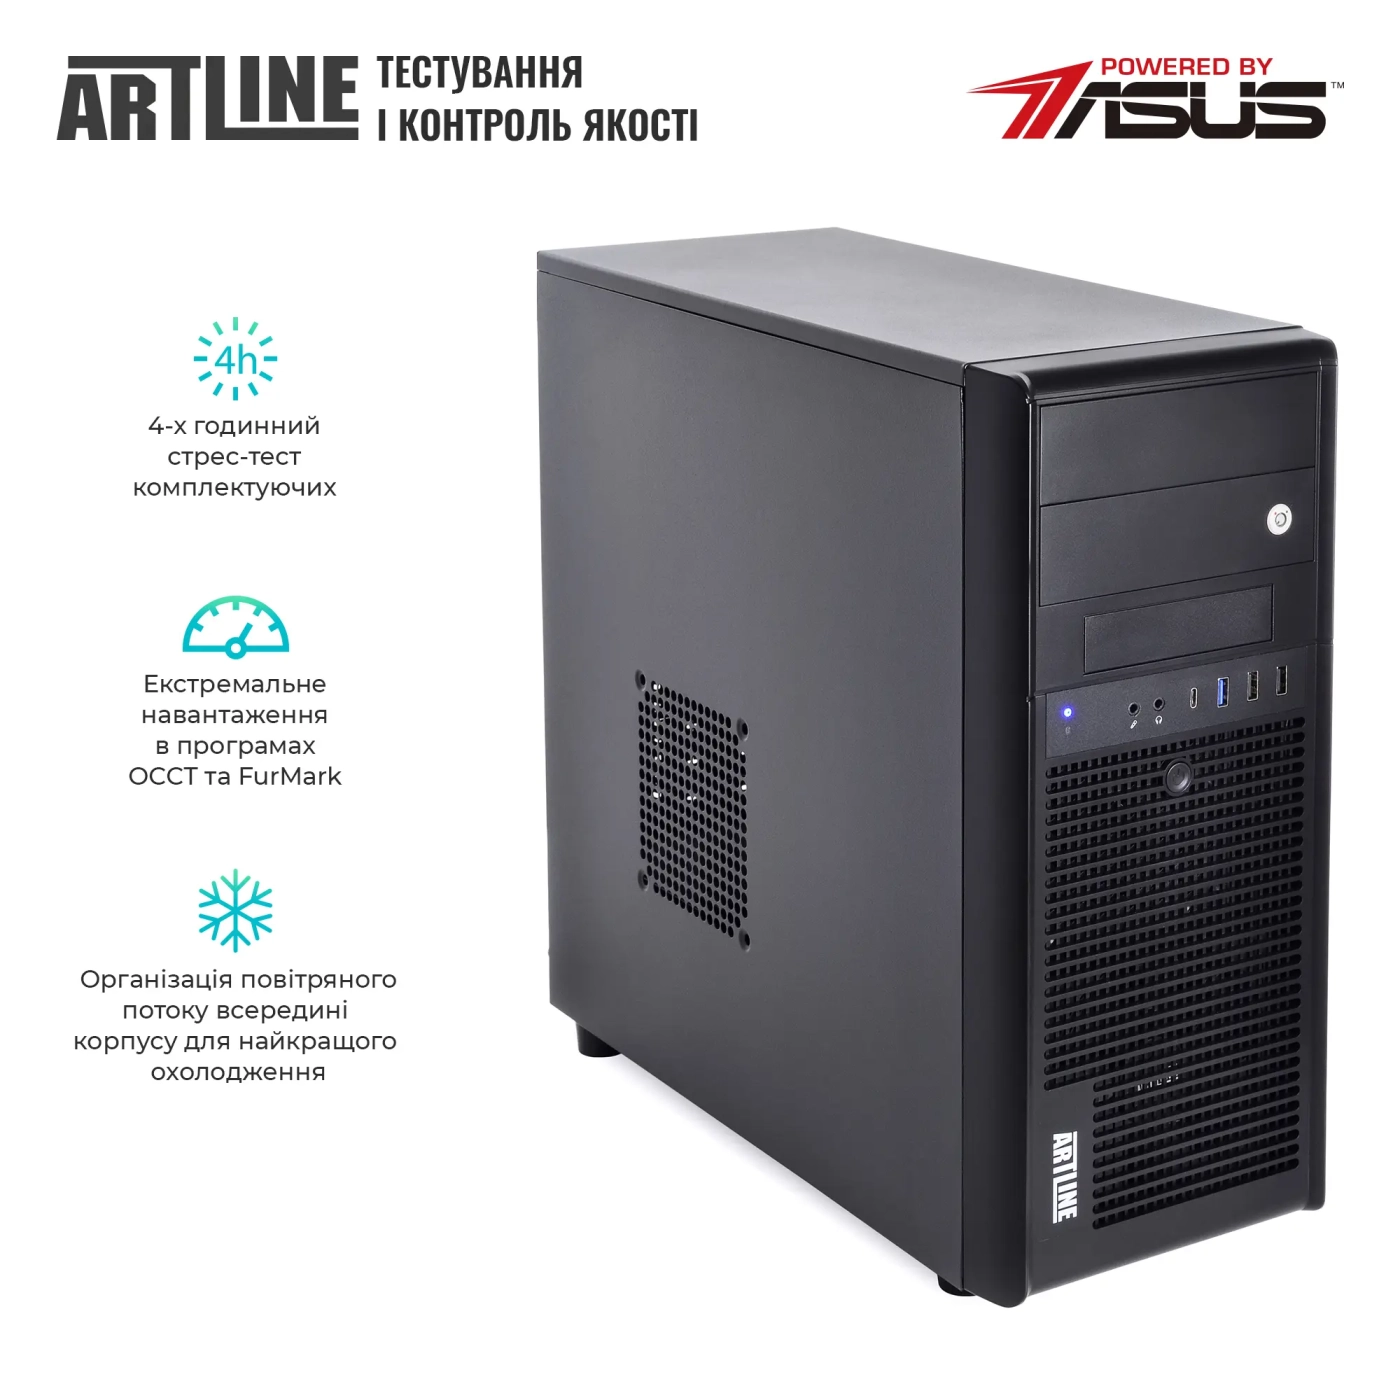 Купить Сервер ARTLINE Business T35 (T35v38) - фото 7